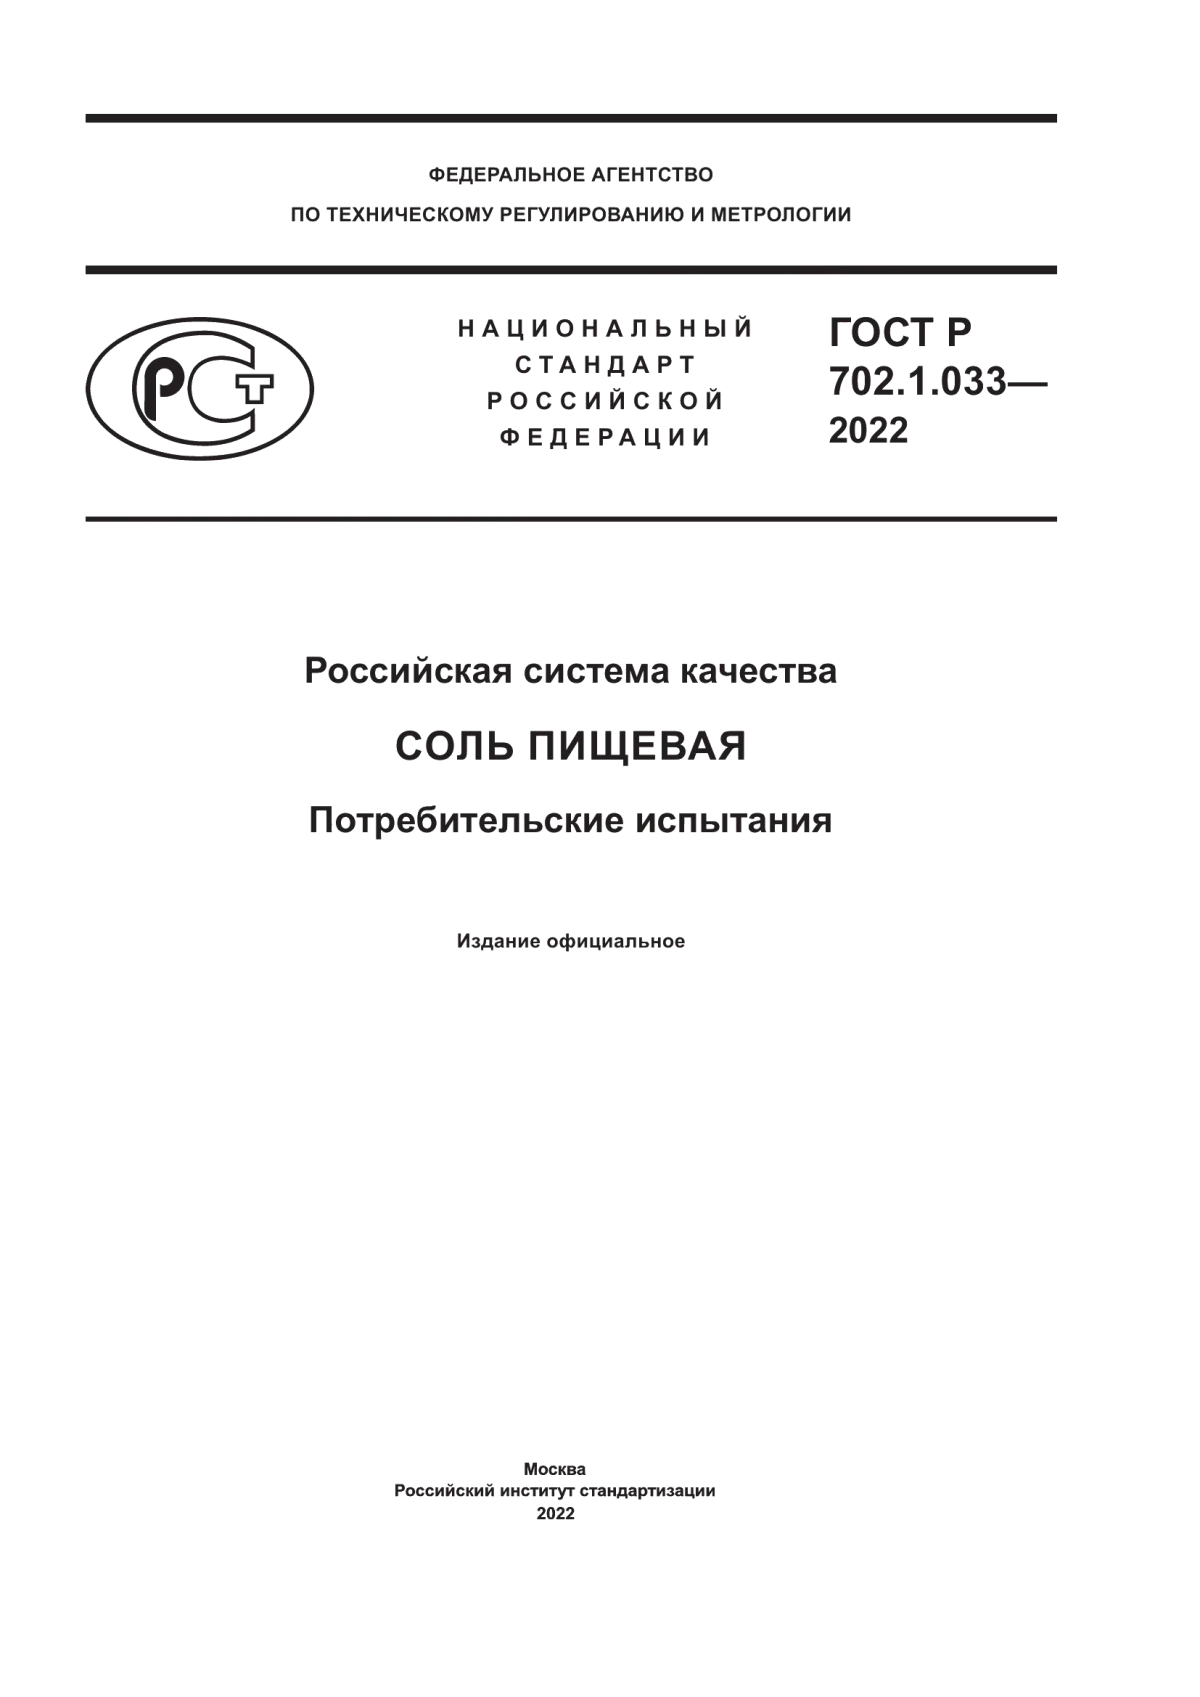 ГОСТ Р 702.1.033-2022 Российская система качества. Соль пищевая. Потребительские испытания